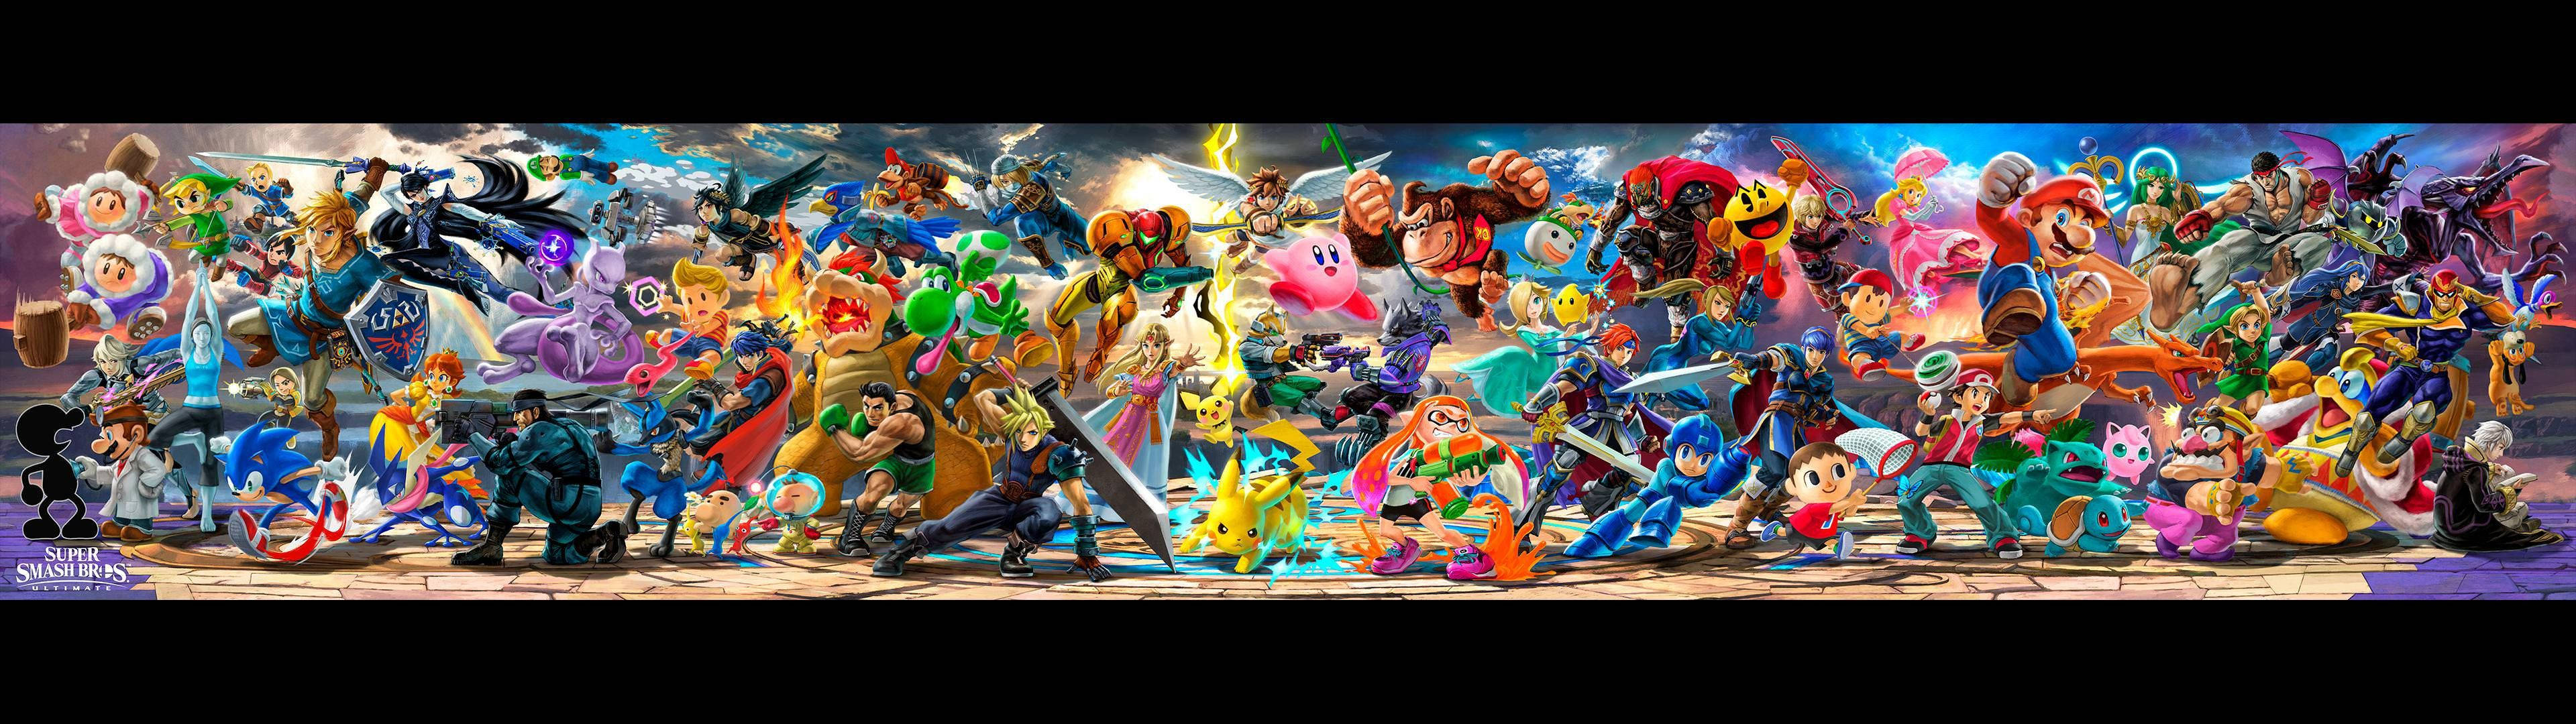 Super Smash Bros Ultimate Epic Banner Background